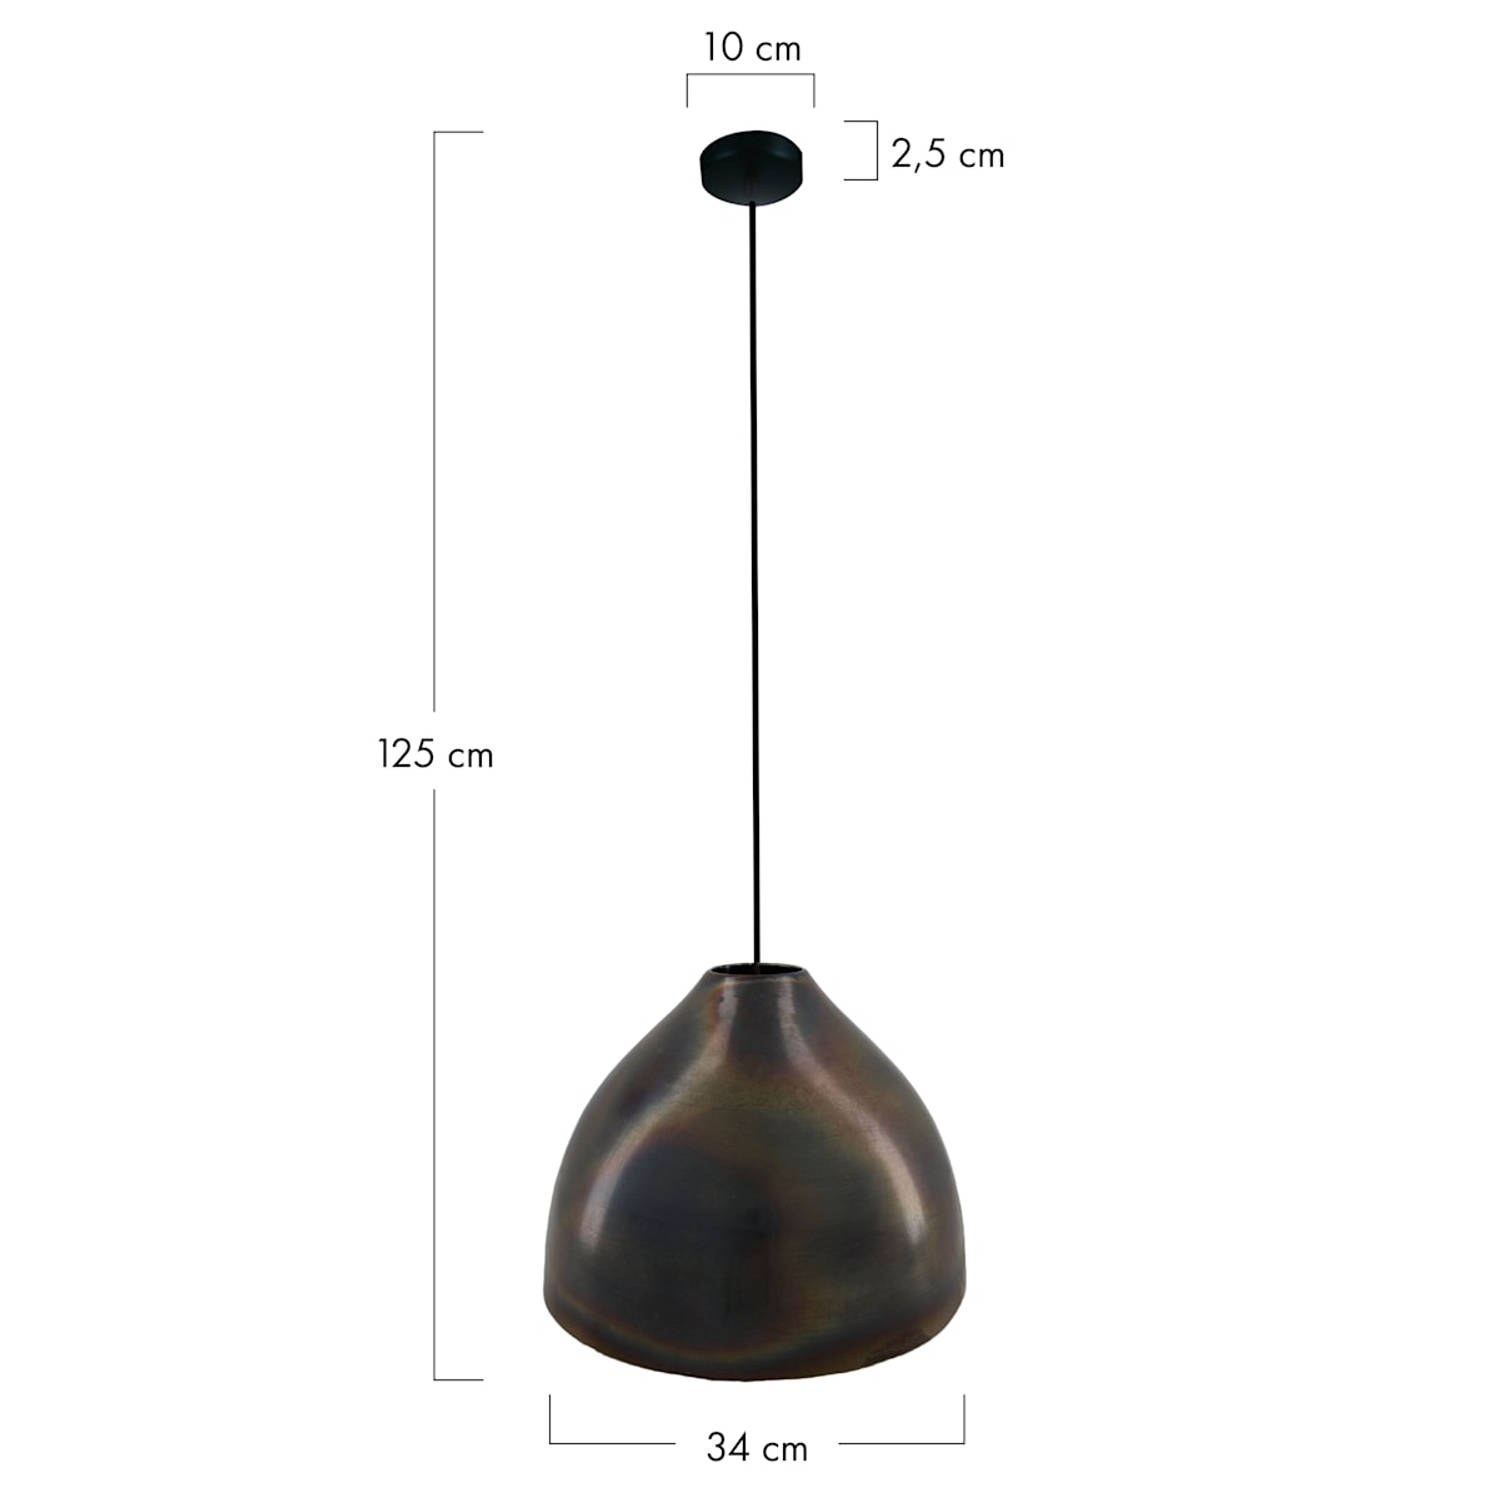 DKNC - Hanglamp Dante - Metaal - 34x34x25cm - Zwart